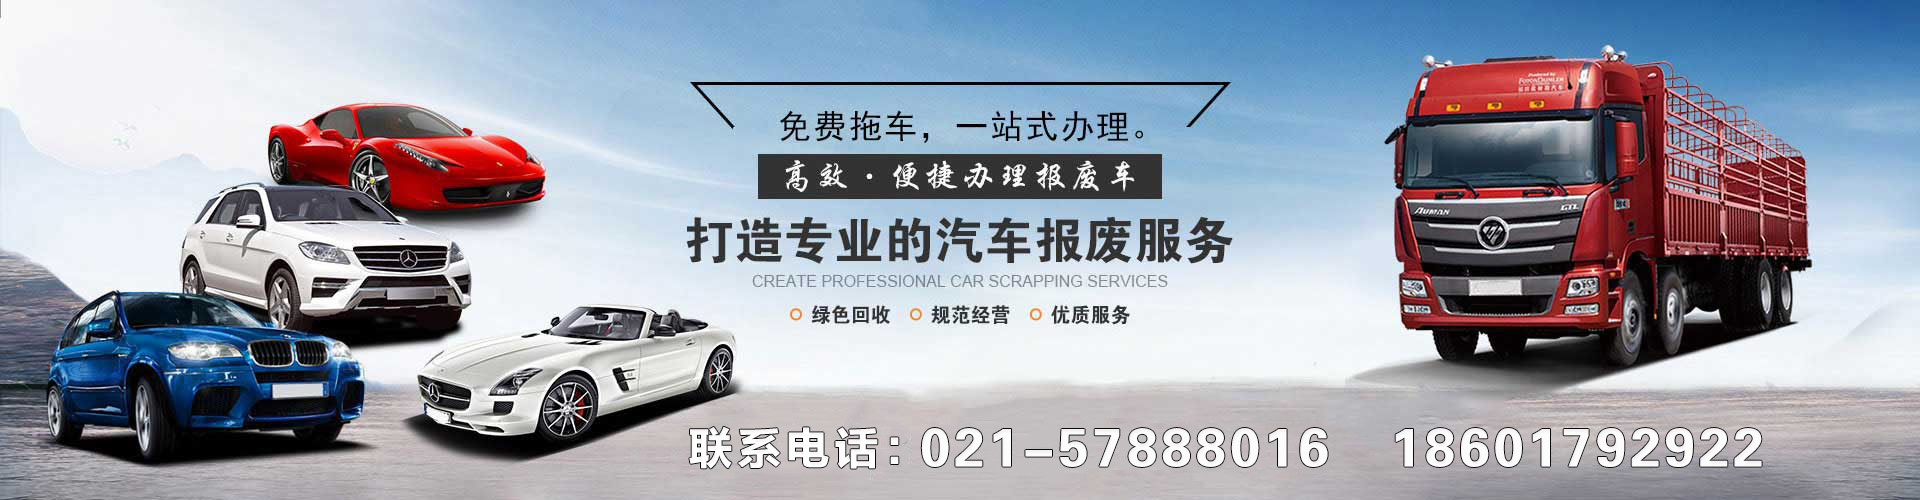 上海报废车回收公司,上海高价回收报废车,上海报废汽车回收